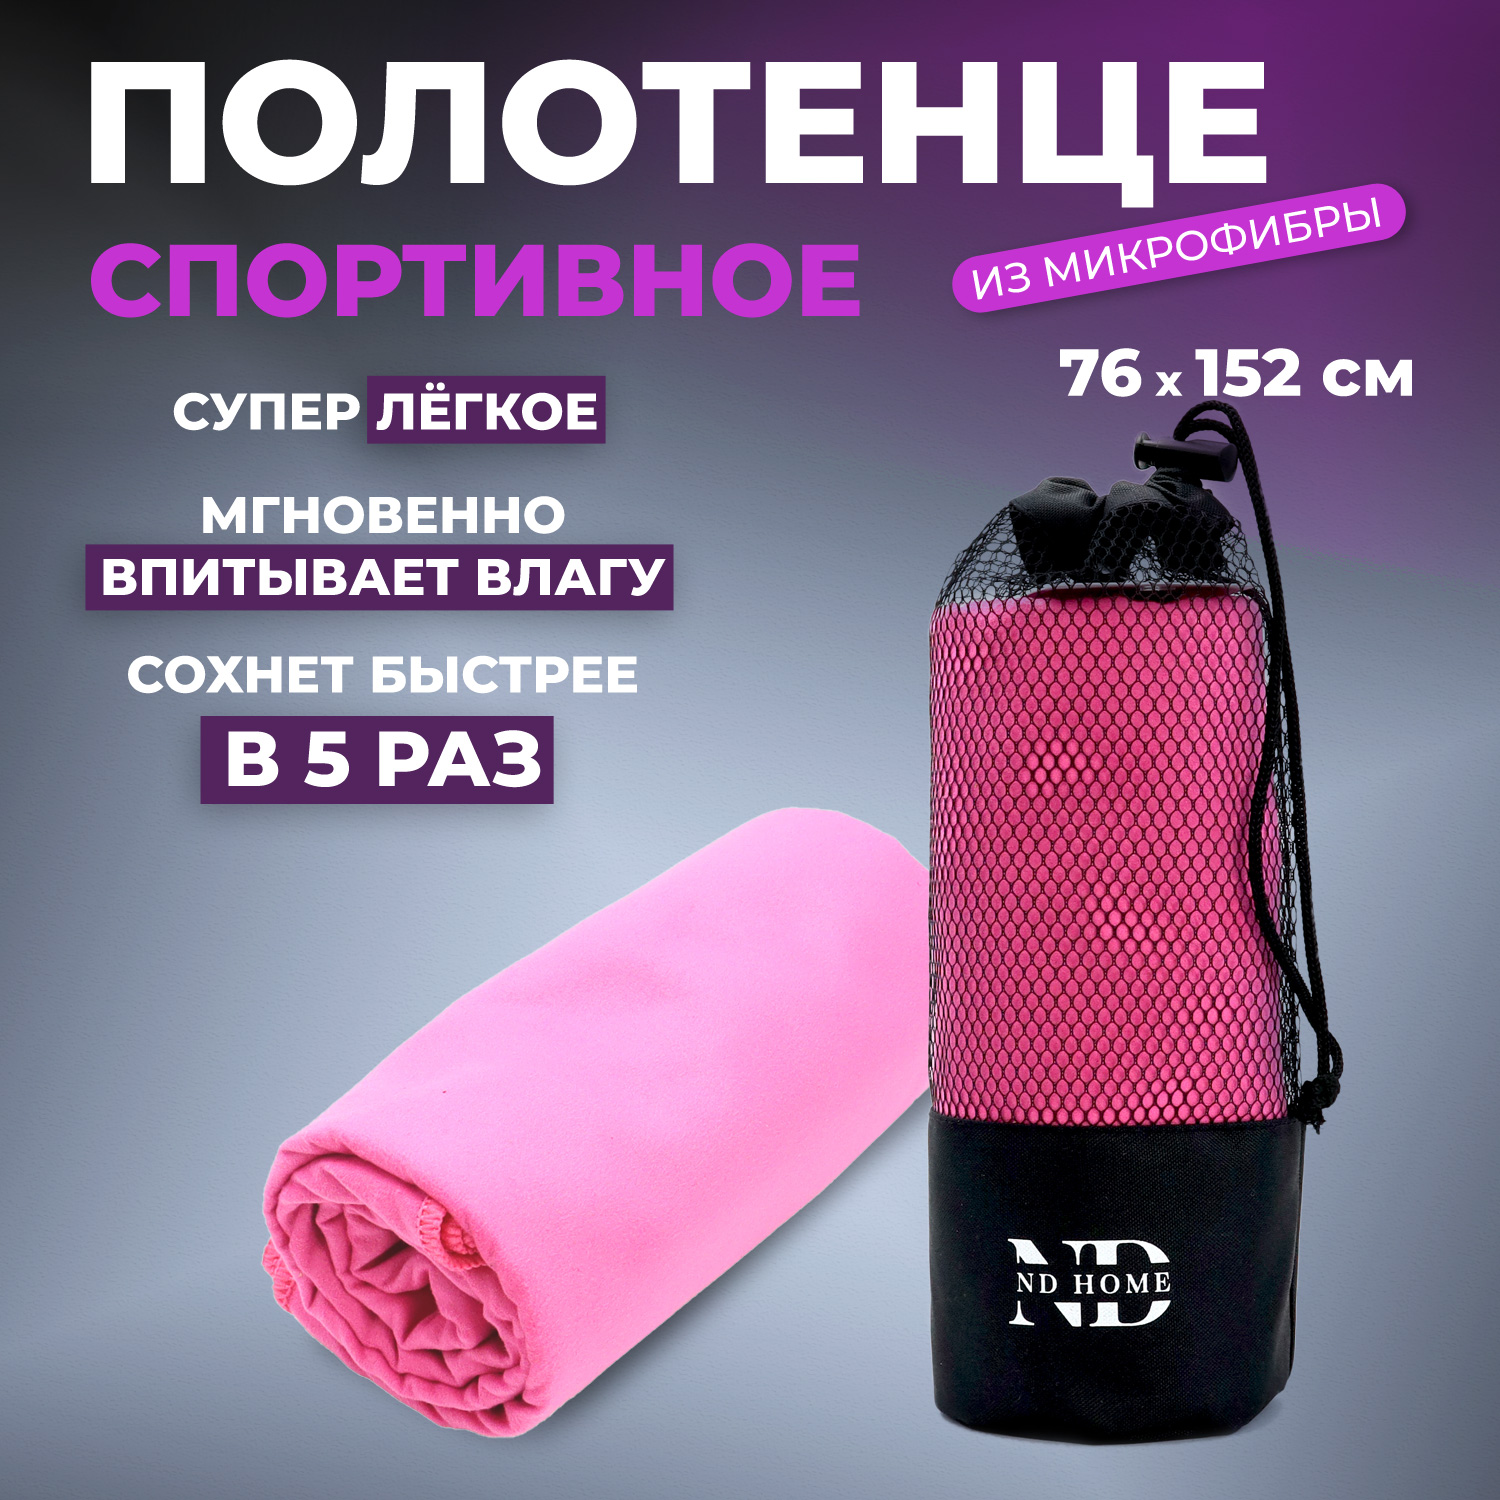 Полотенце спортивное ND Play 310563, микрофибра, 76*152см, розовый - купить в Москве, цены на Мегамаркет | 600017158444